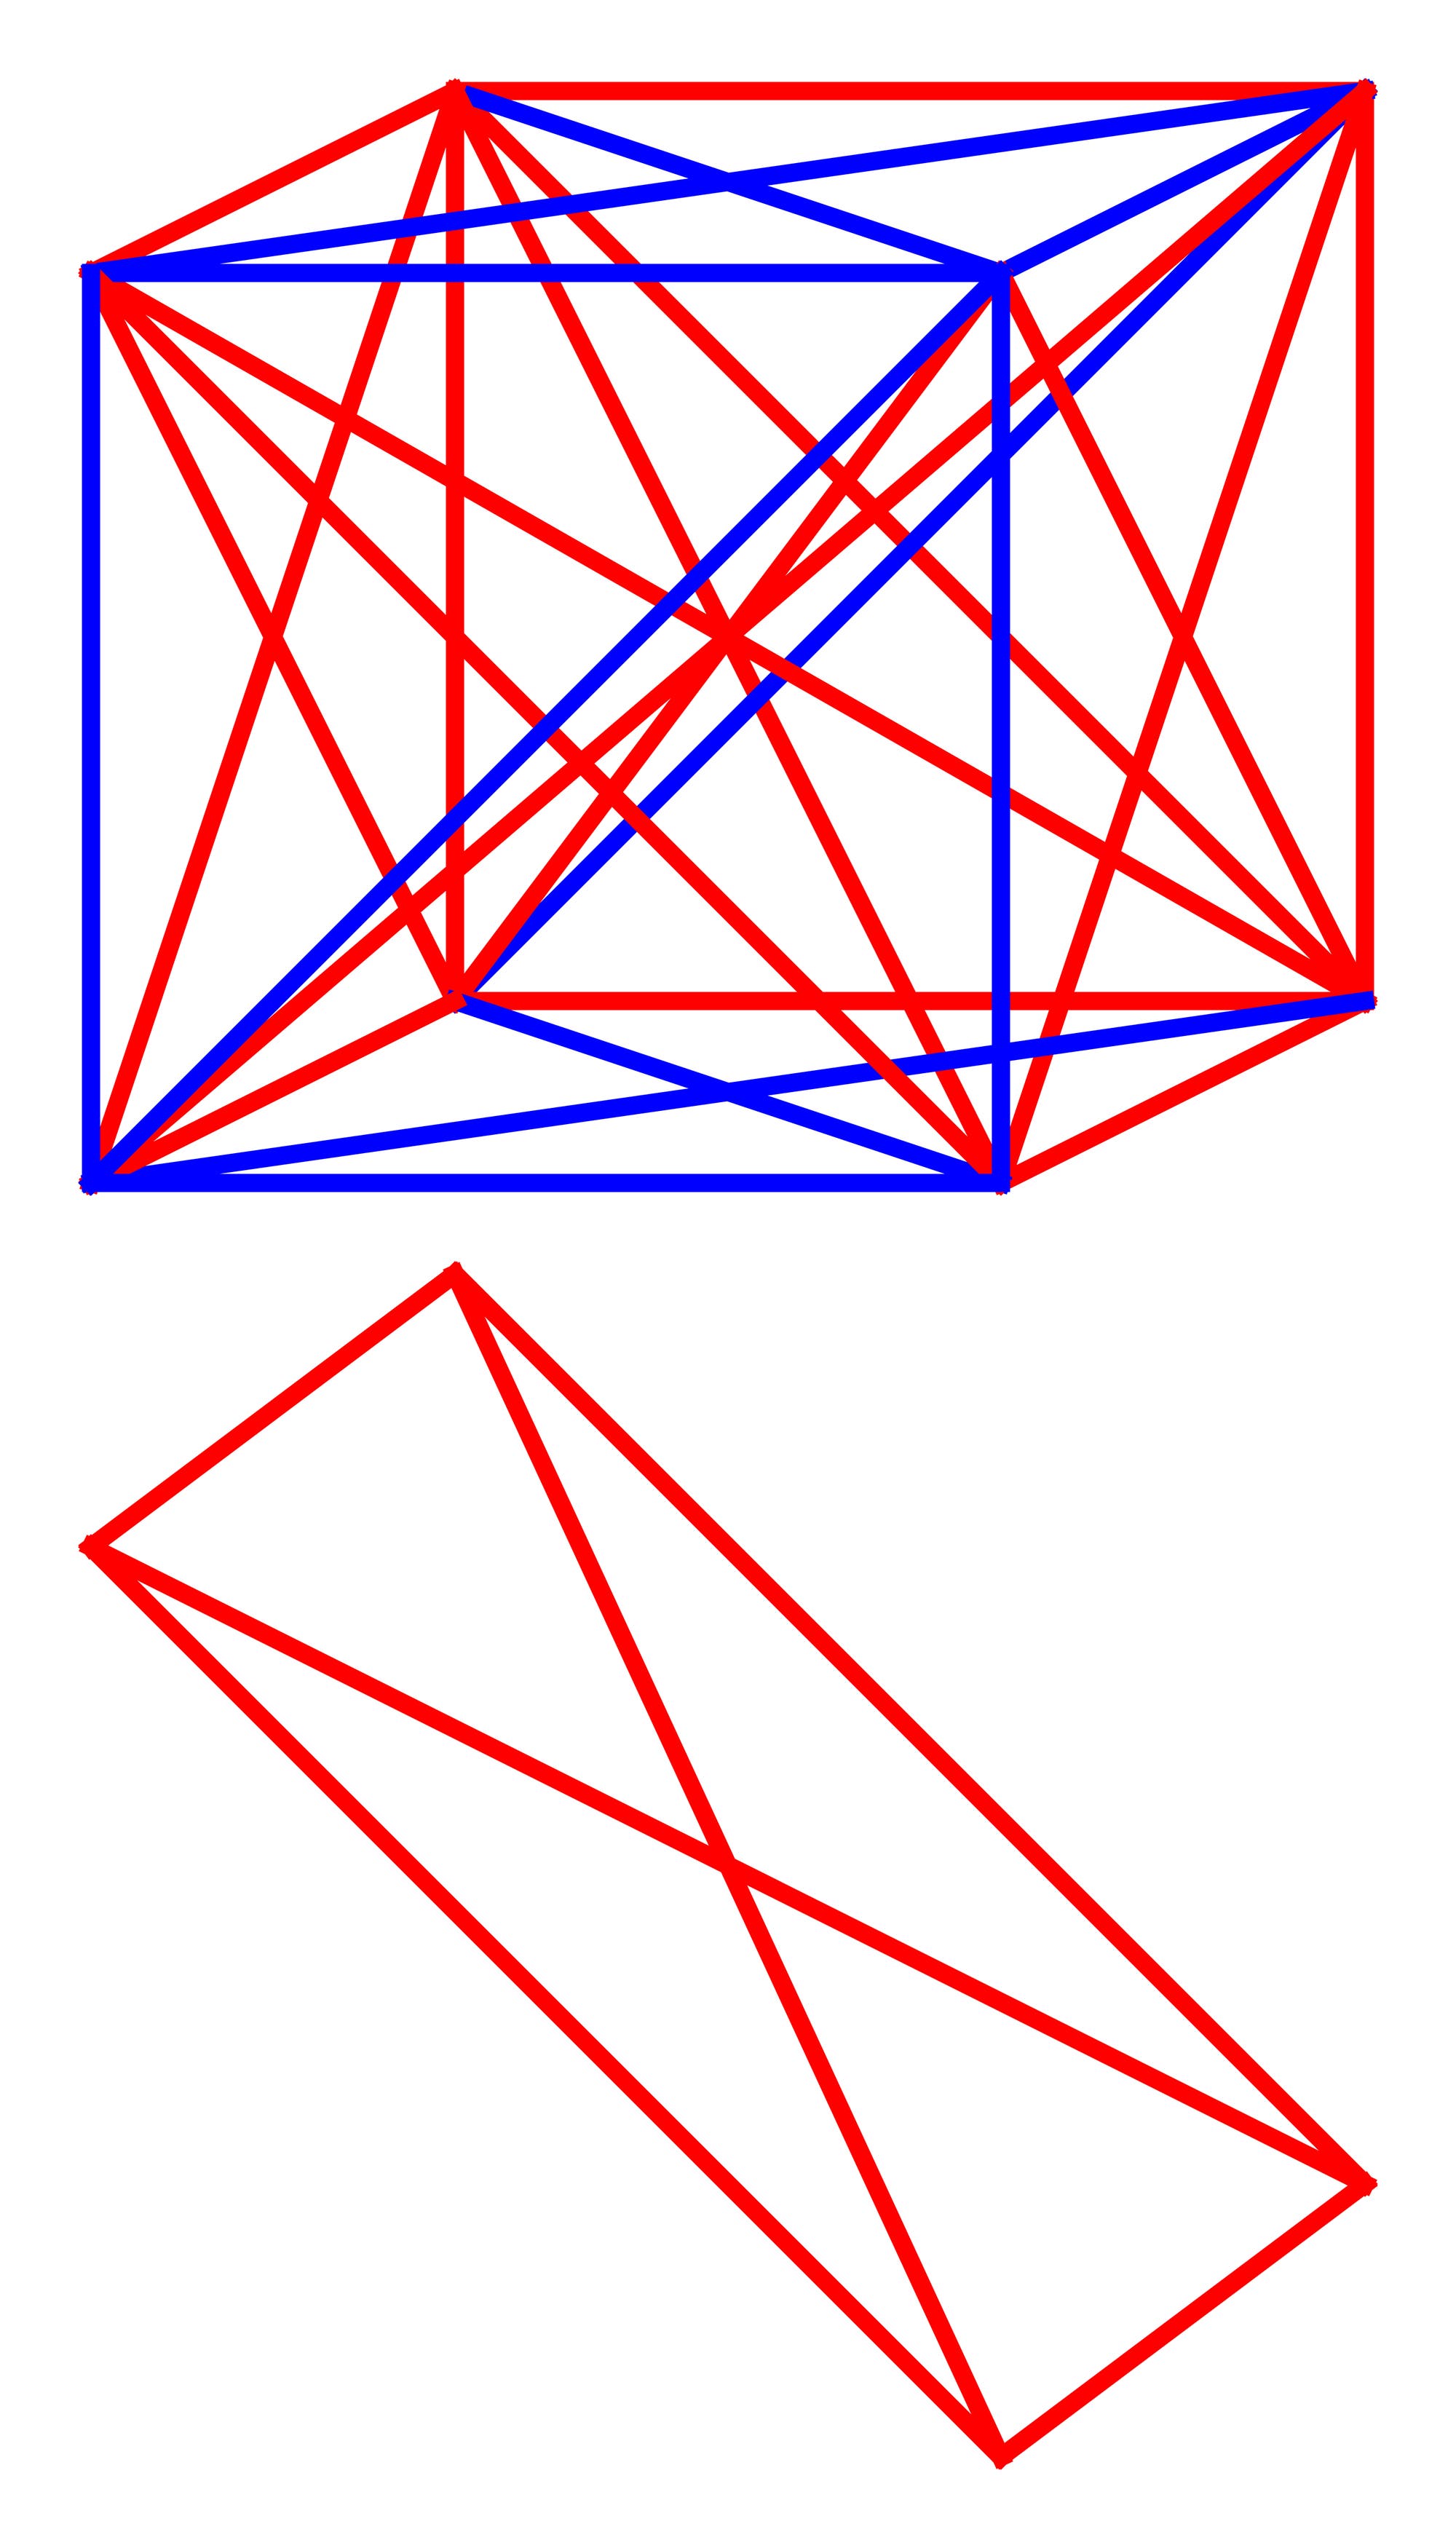 Ein Würfel, dessen Eckpunkte durch rote und blaue Linien verbunden sind.